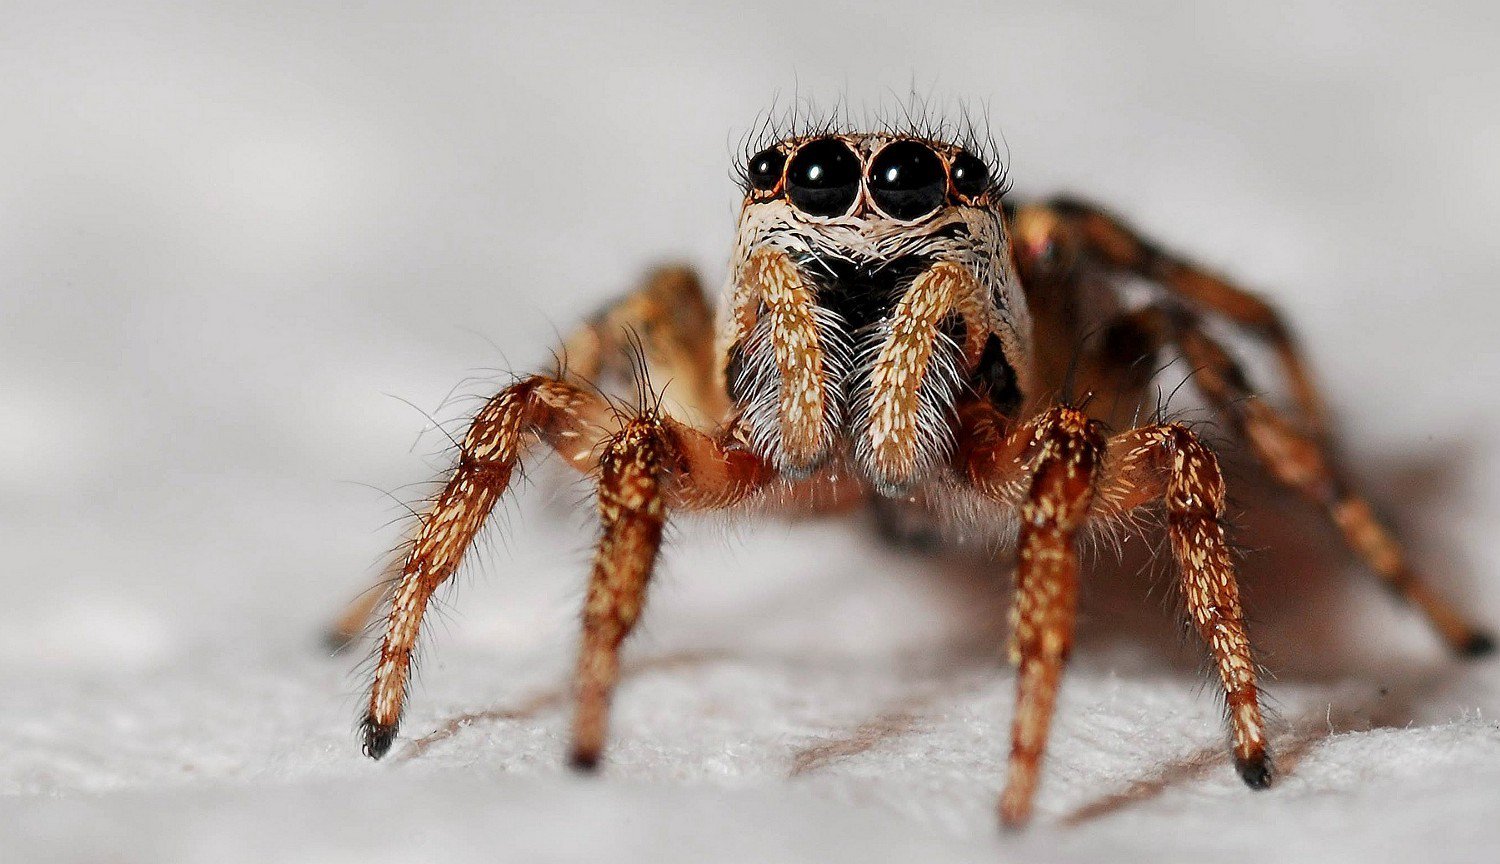 المتحجرة العنكبوت يعرف كيف تألق العينين حتى بعد ملايين السنين